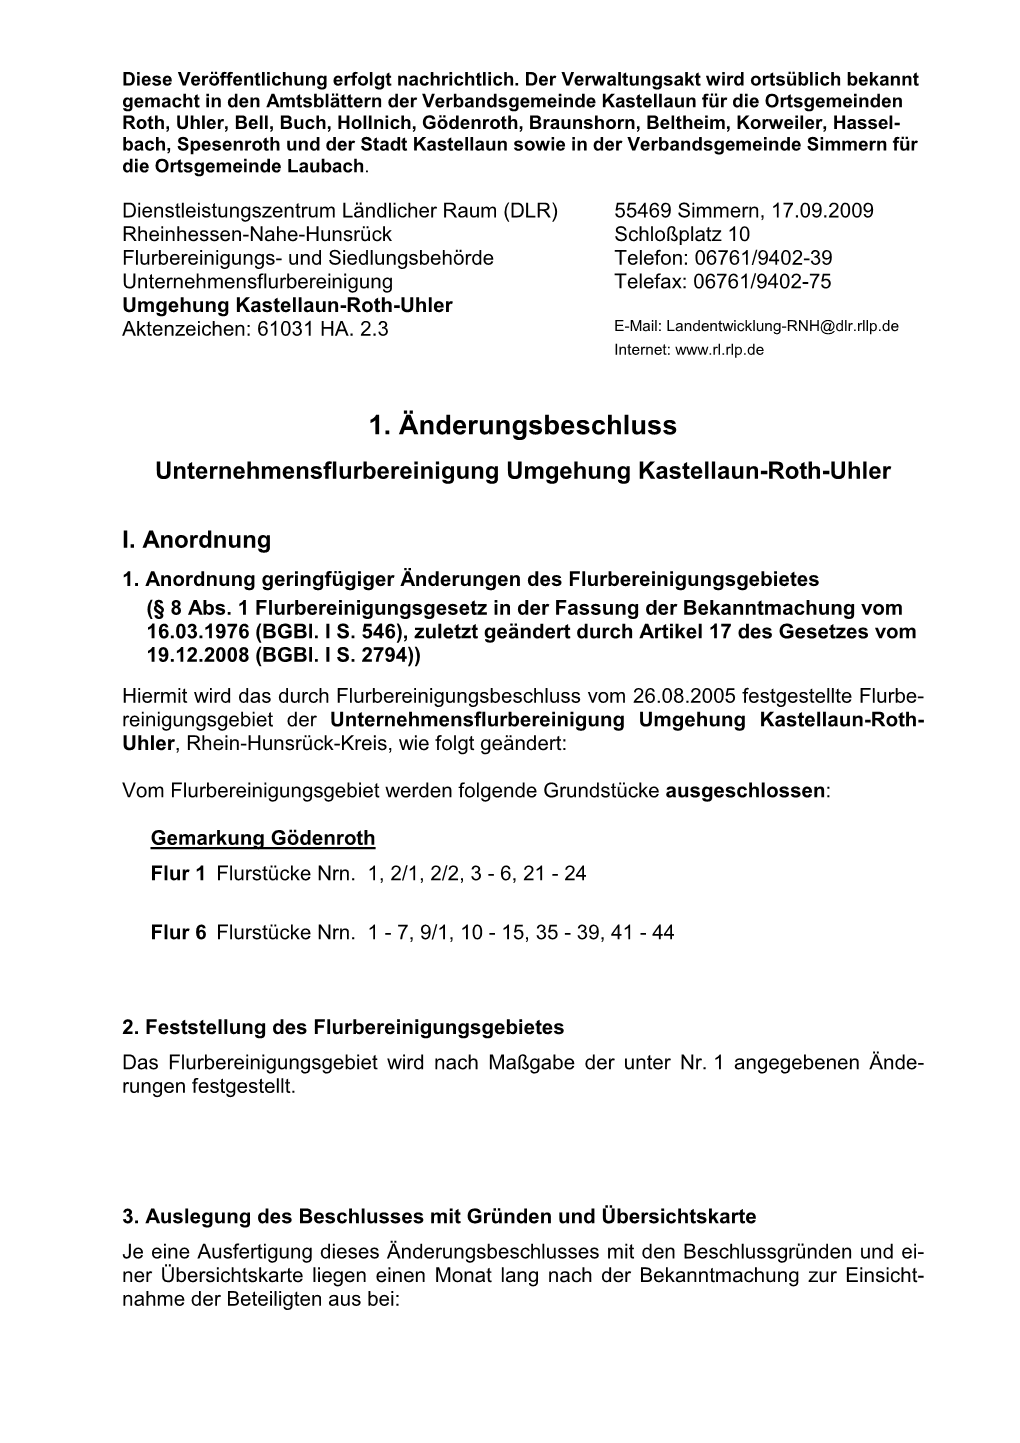 1. Änderungsbeschluss Unternehmensflurbereinigung Umgehung Kastellaun-Roth-Uhler